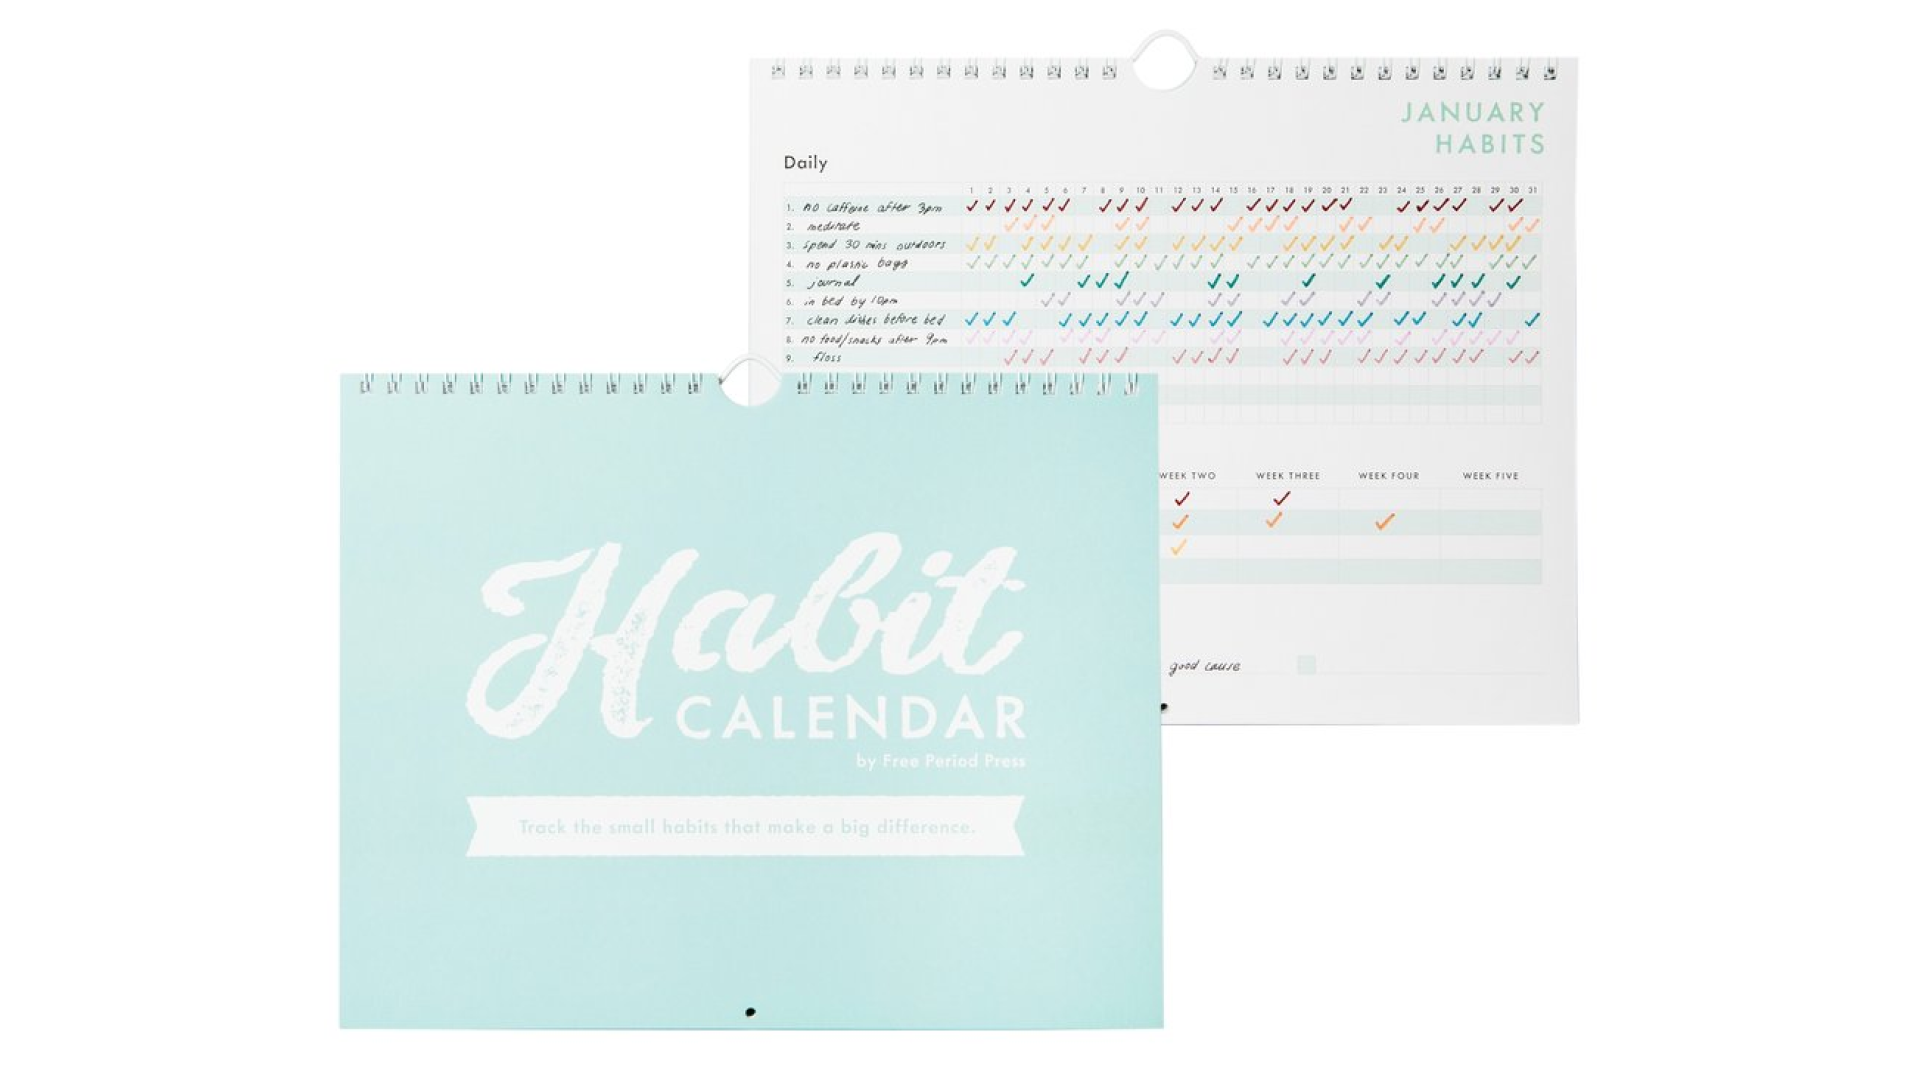 Habit calendar